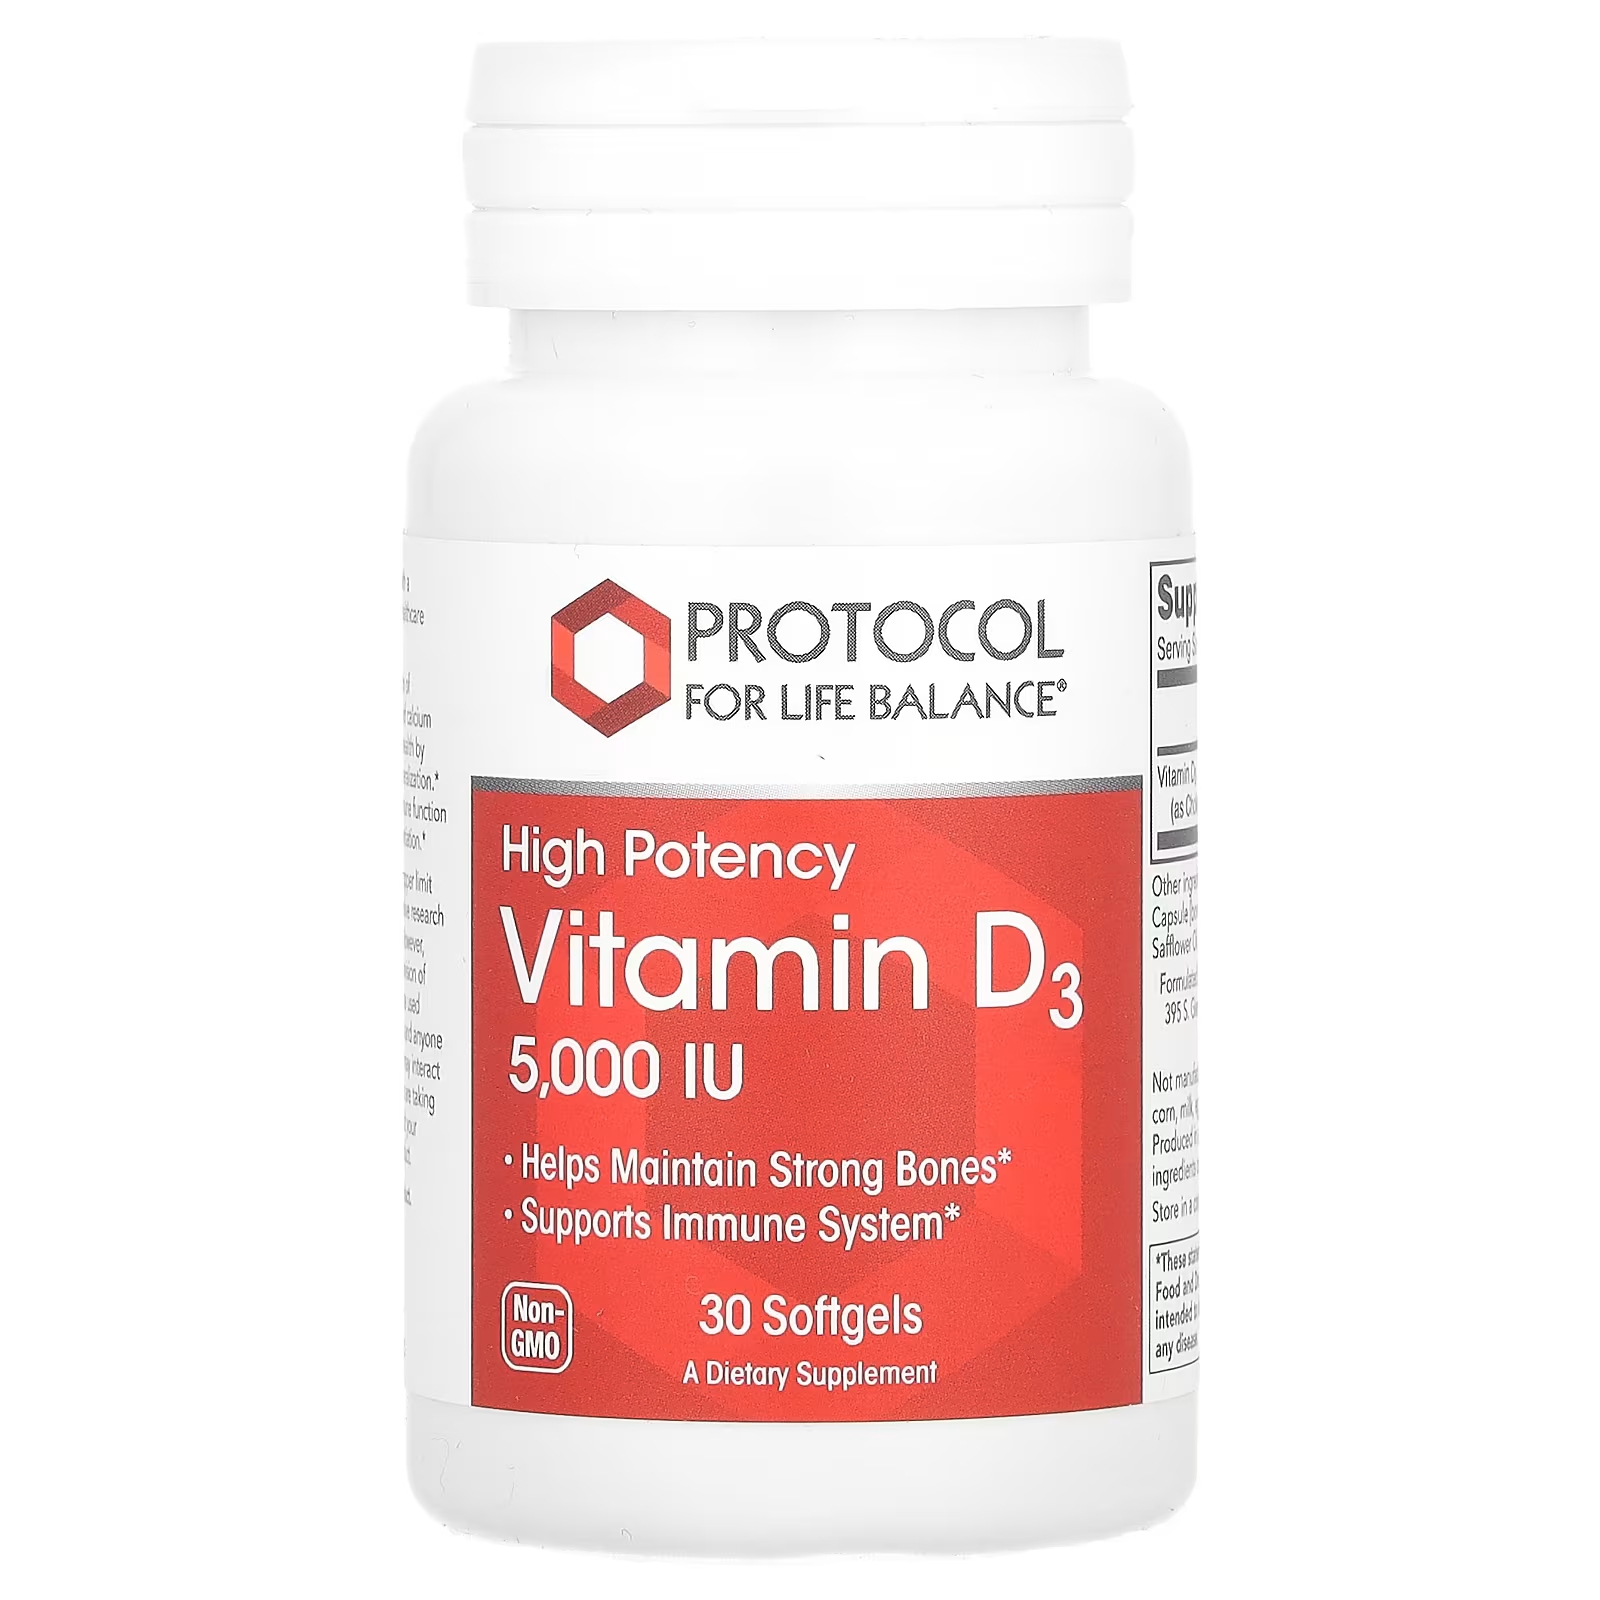 Витамин D3 Protocol for Life Balance высокой эффективности, 30 мягких таблеток